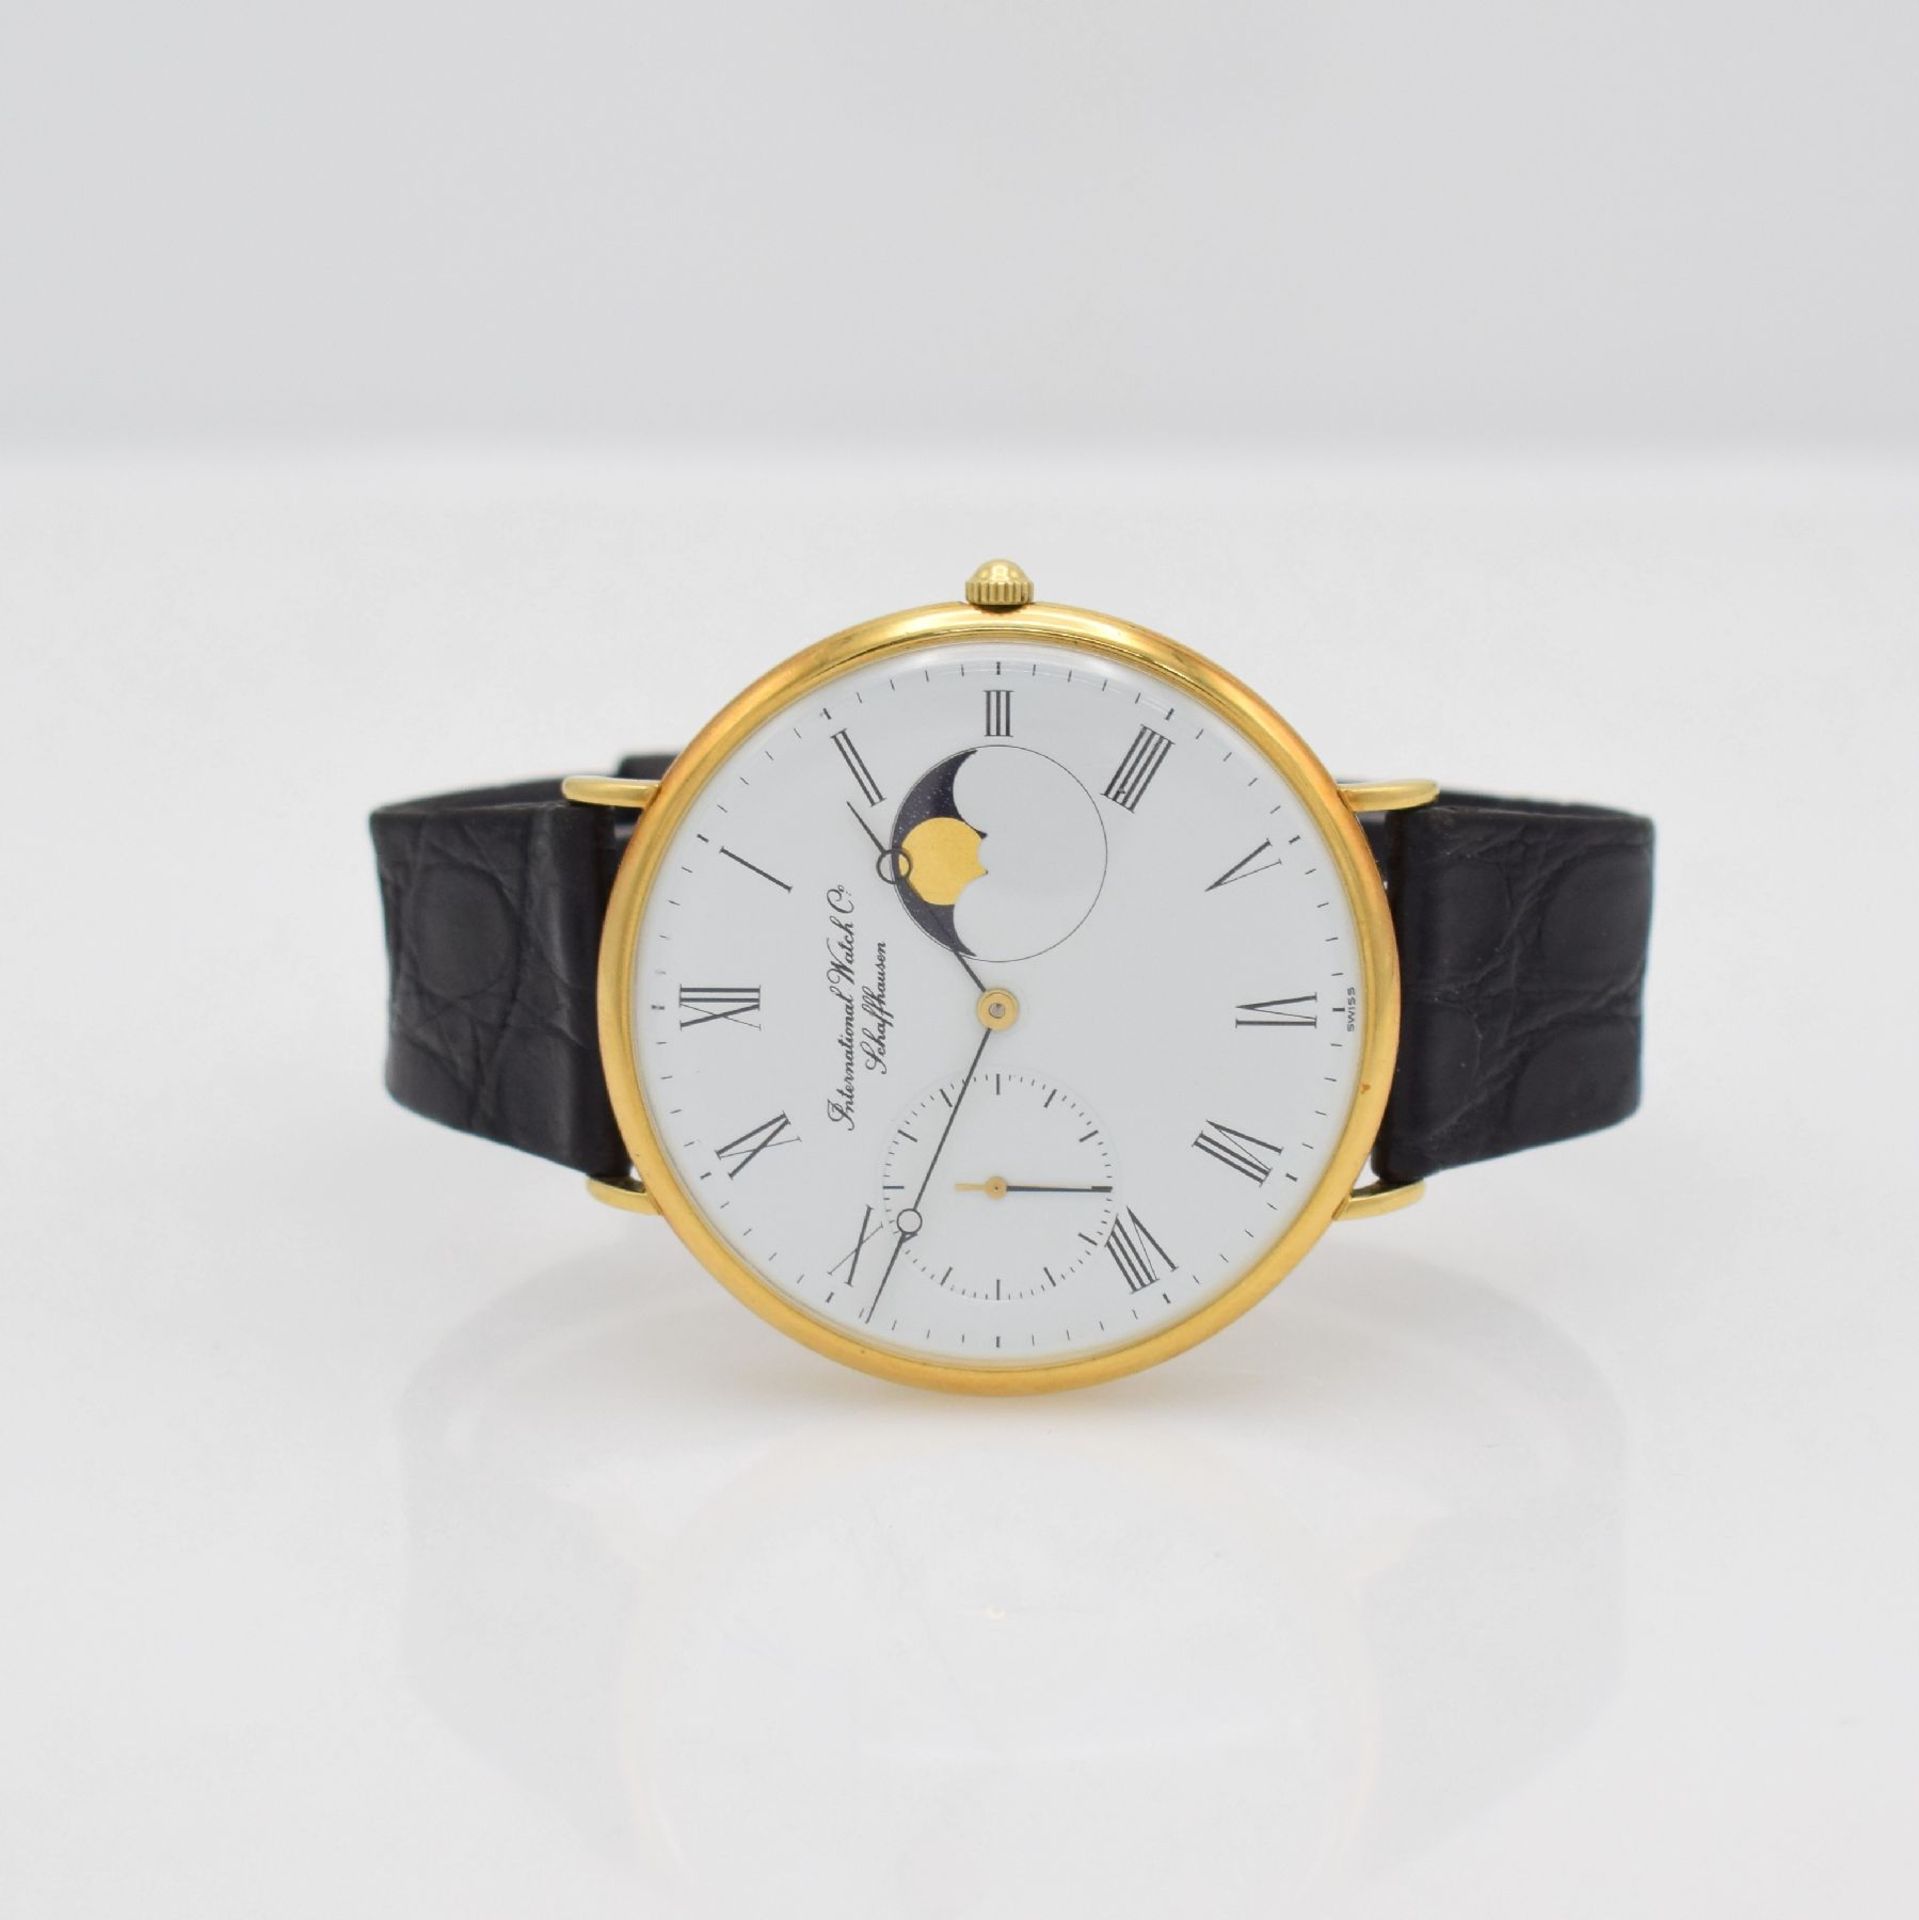 IWC große Armbanduhr Portofino Referenz 5251 in GG 750/000, Handaufzug, Schweiz 1980er Jahre, 3-